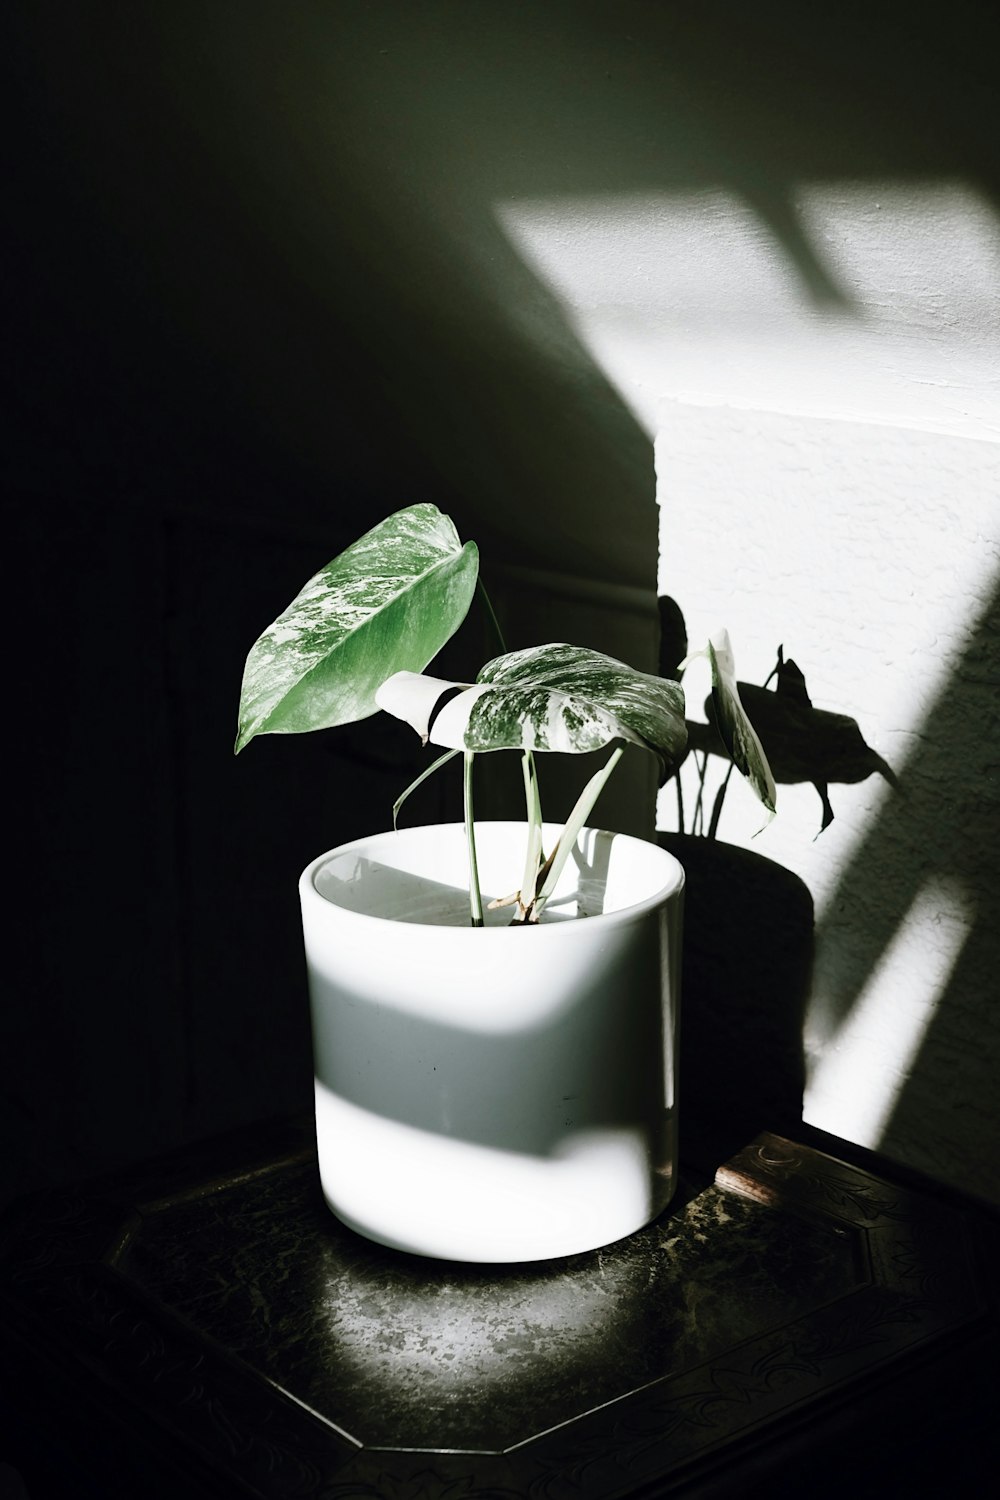 Planta verde en maceta de cerámica blanca